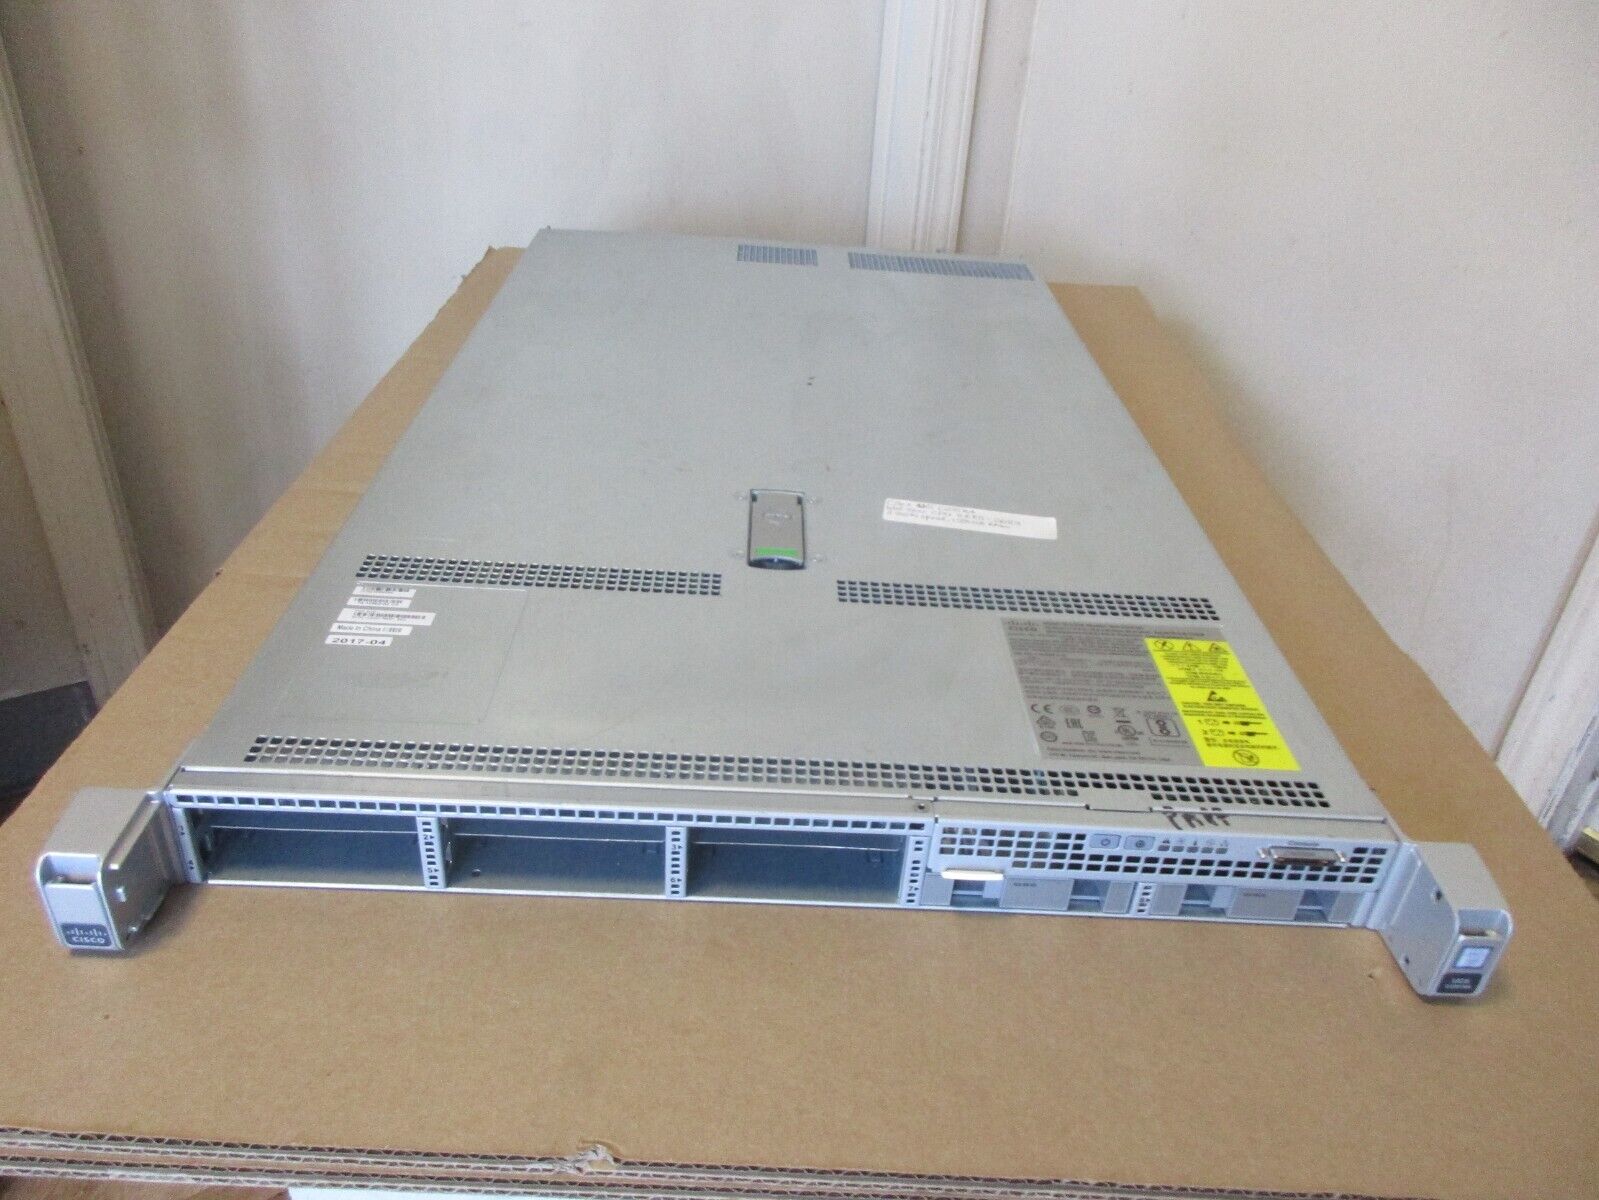 Cisco UCS-C220-M4 Server, 2 x E5-2683, 128GB RAM, No HDD, 2 x 770W